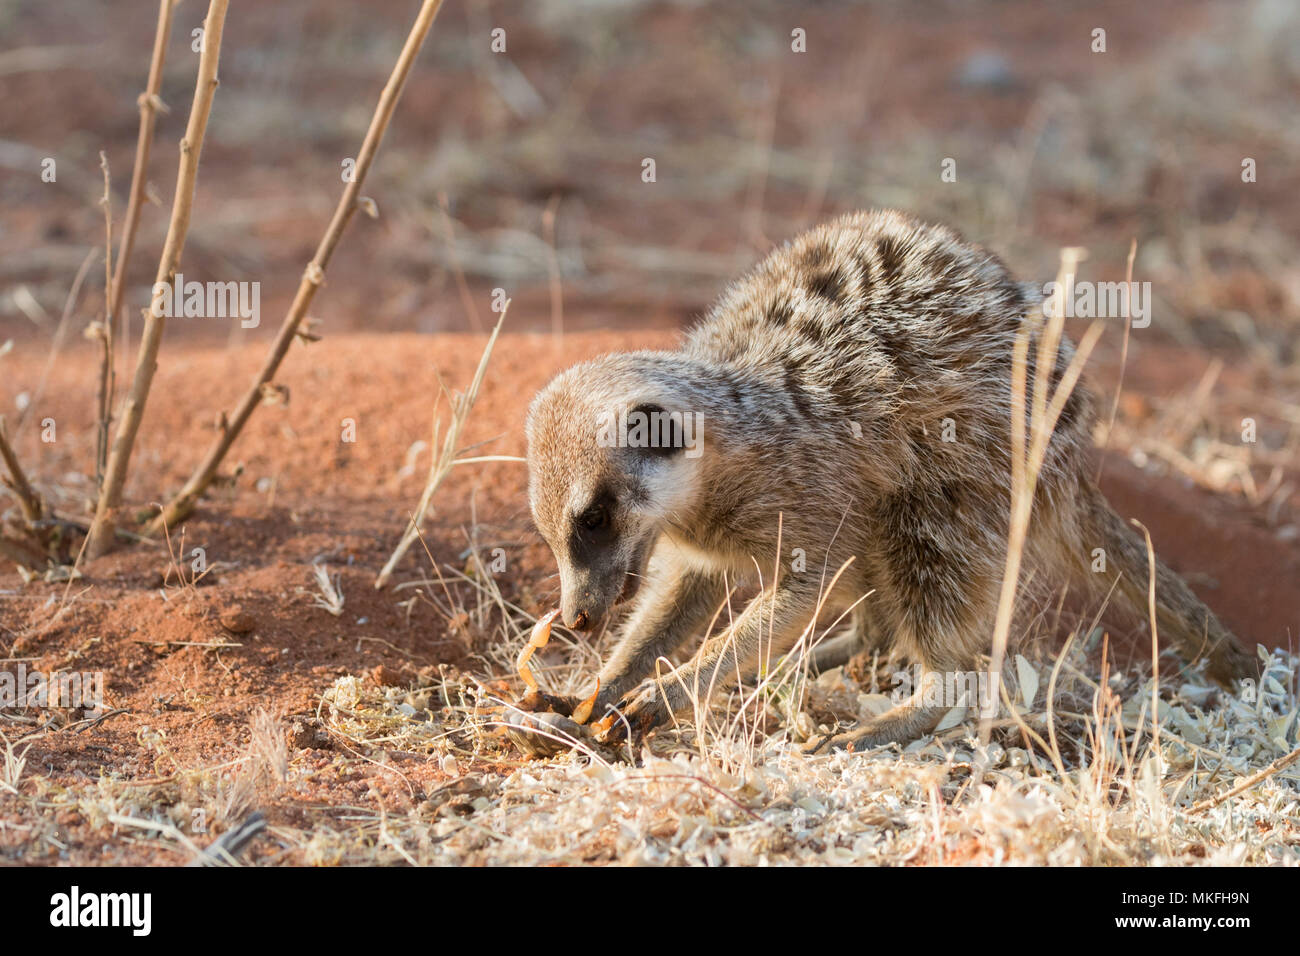 O suricata o Suricata suricatta suricate (), come un escorpión, el desierto de Kalahari, República Sudafricana Foto de stock